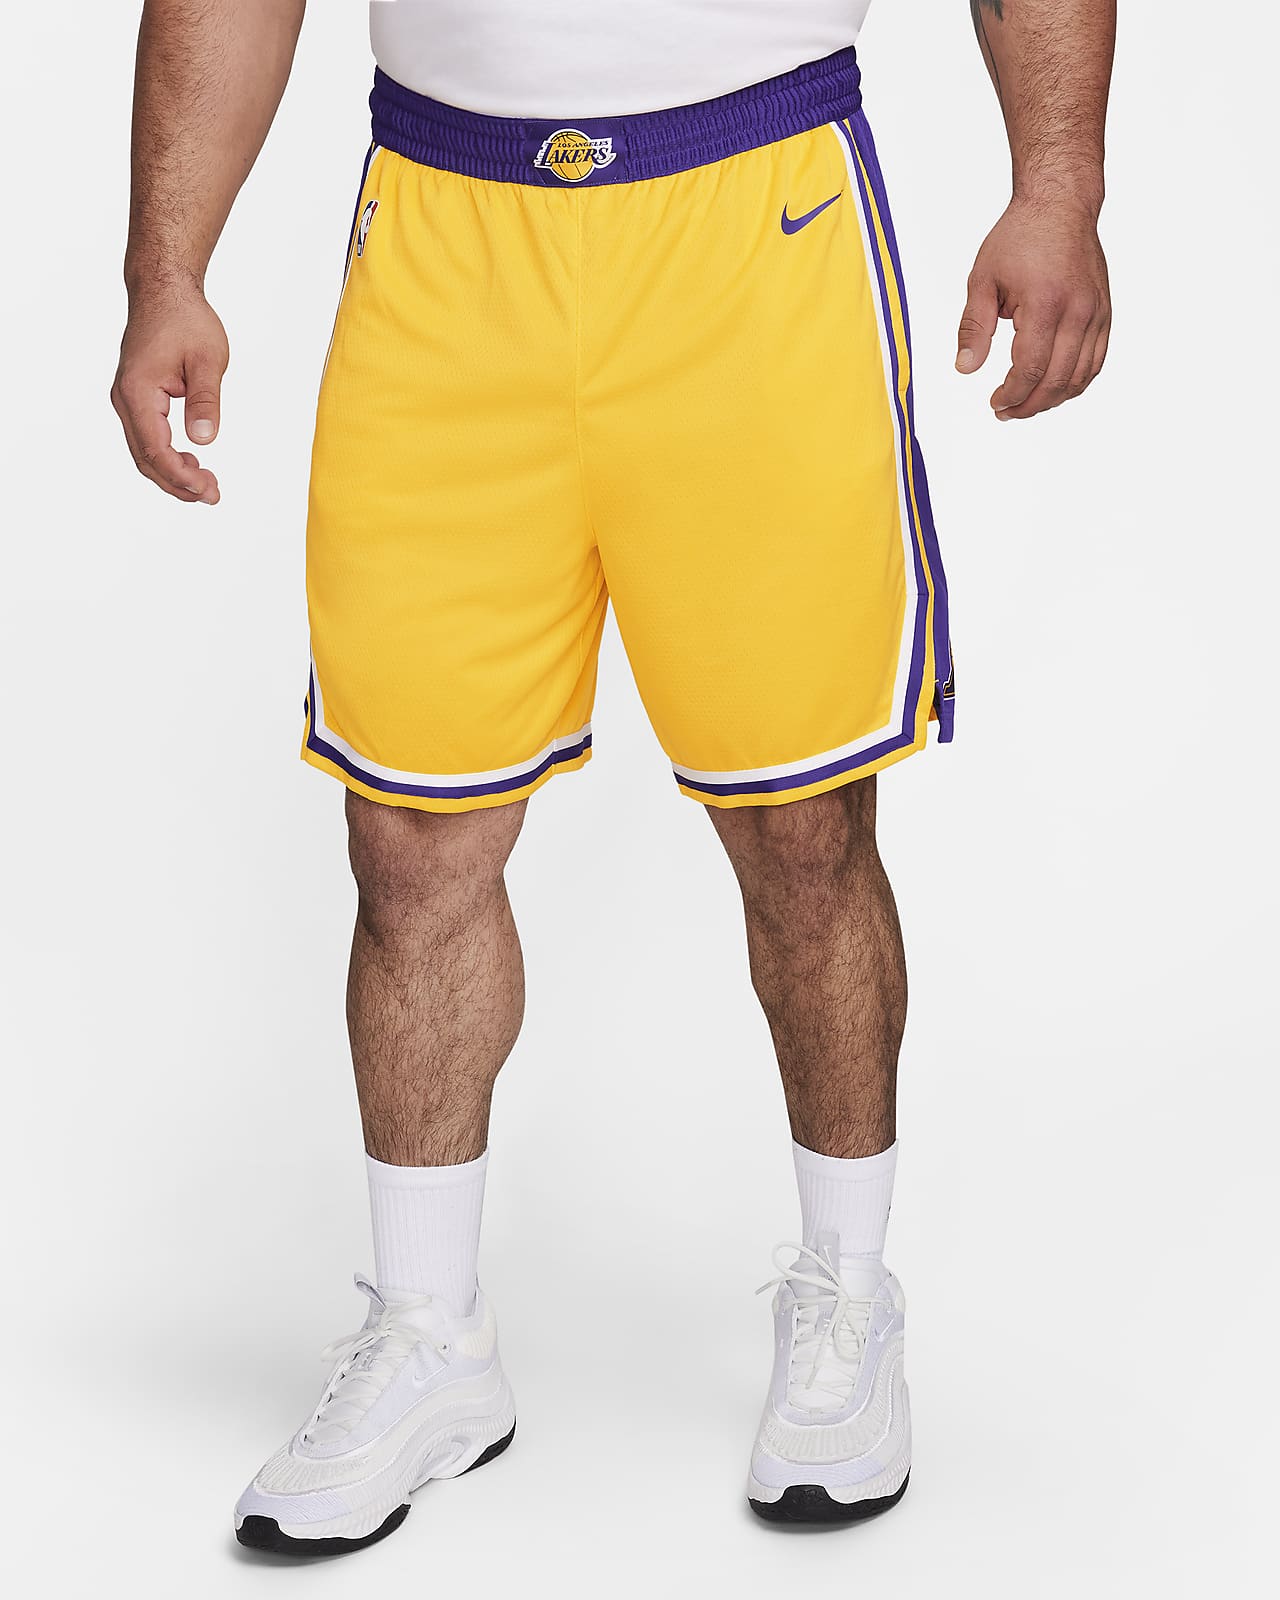 Calções NBA Nike Swingman Los Angeles Lakers Icon Edition para homem